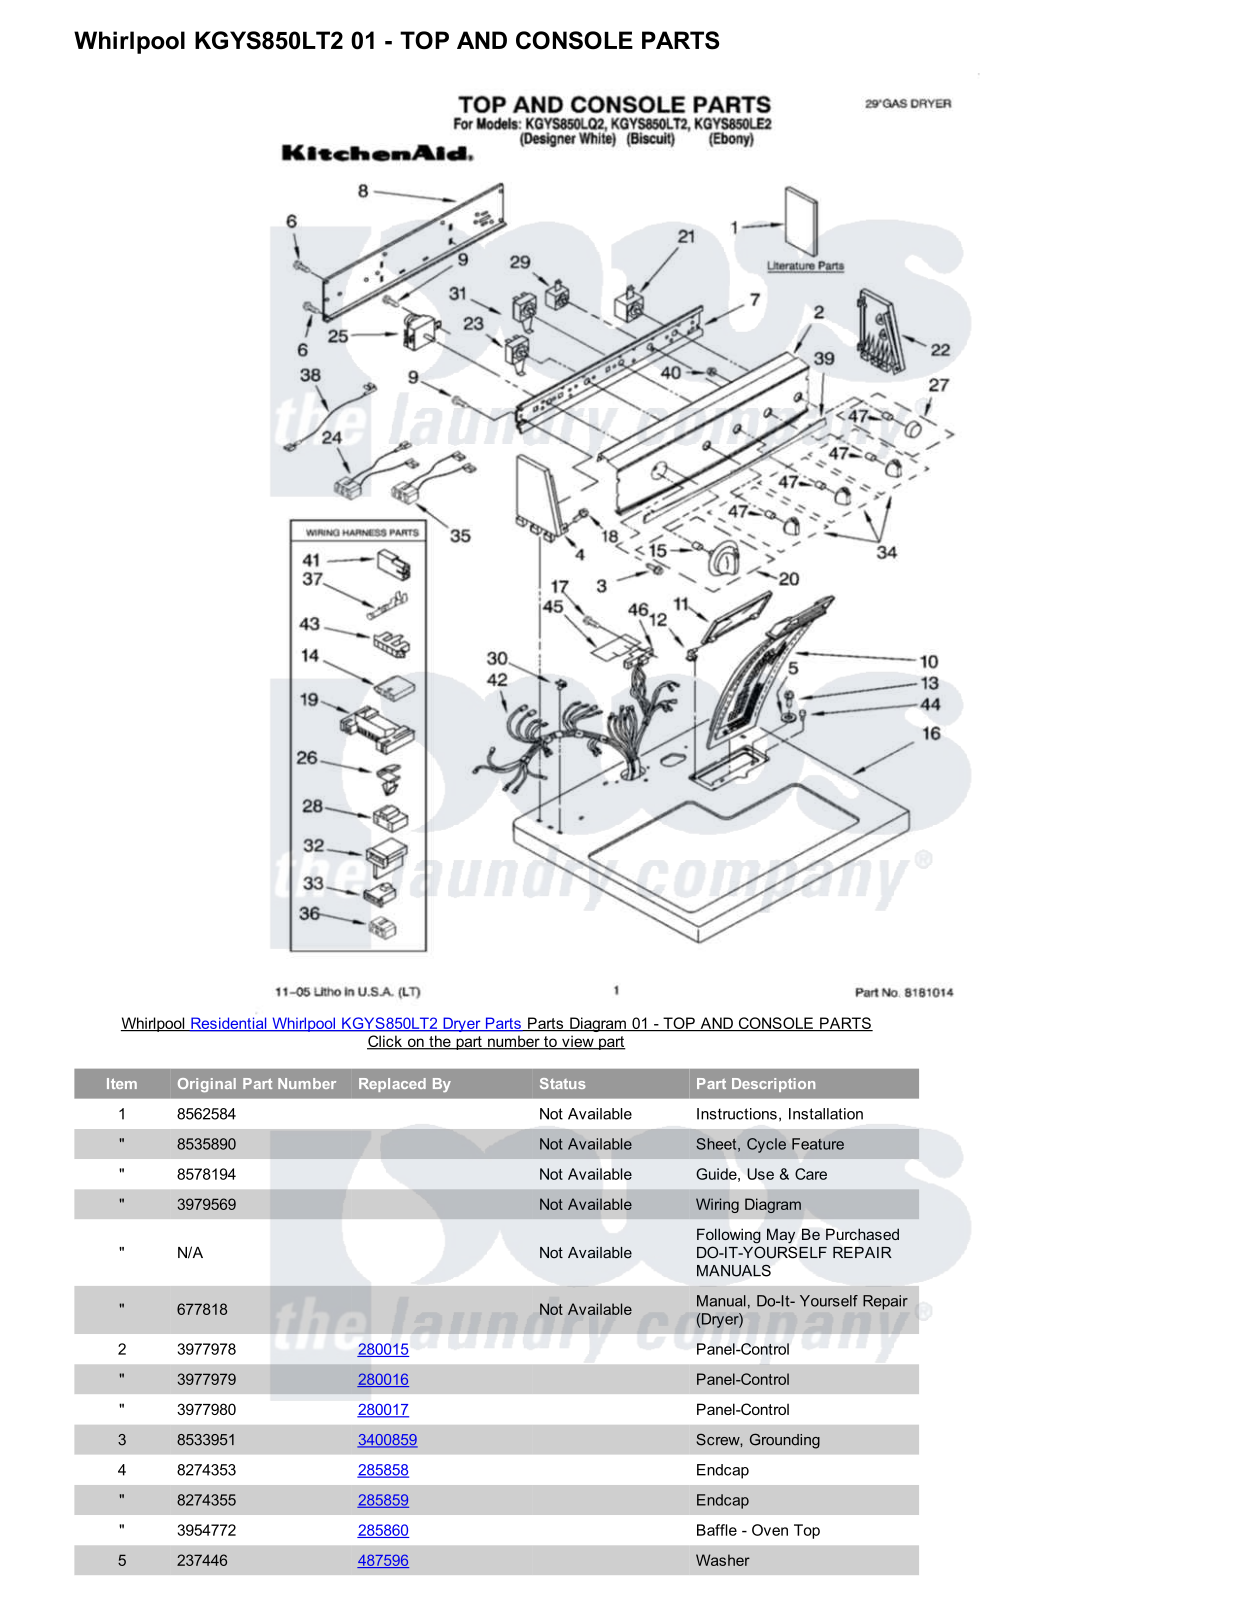 Whirlpool KGYS850LT2 Parts Diagram